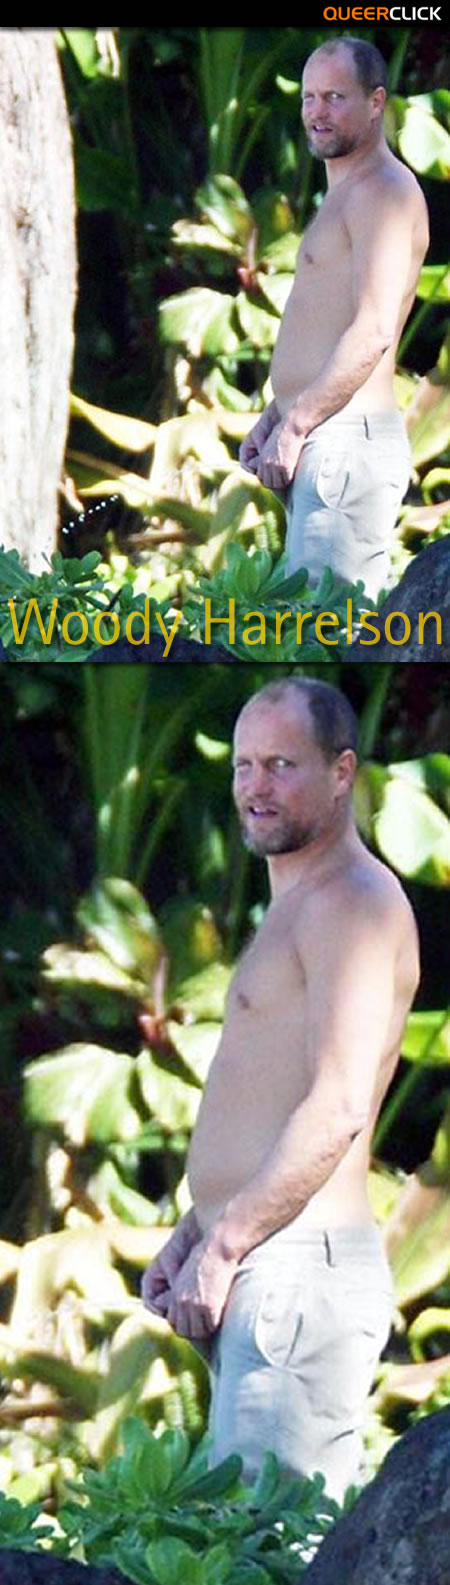 Woody Harrelson Meando al Aire Libre